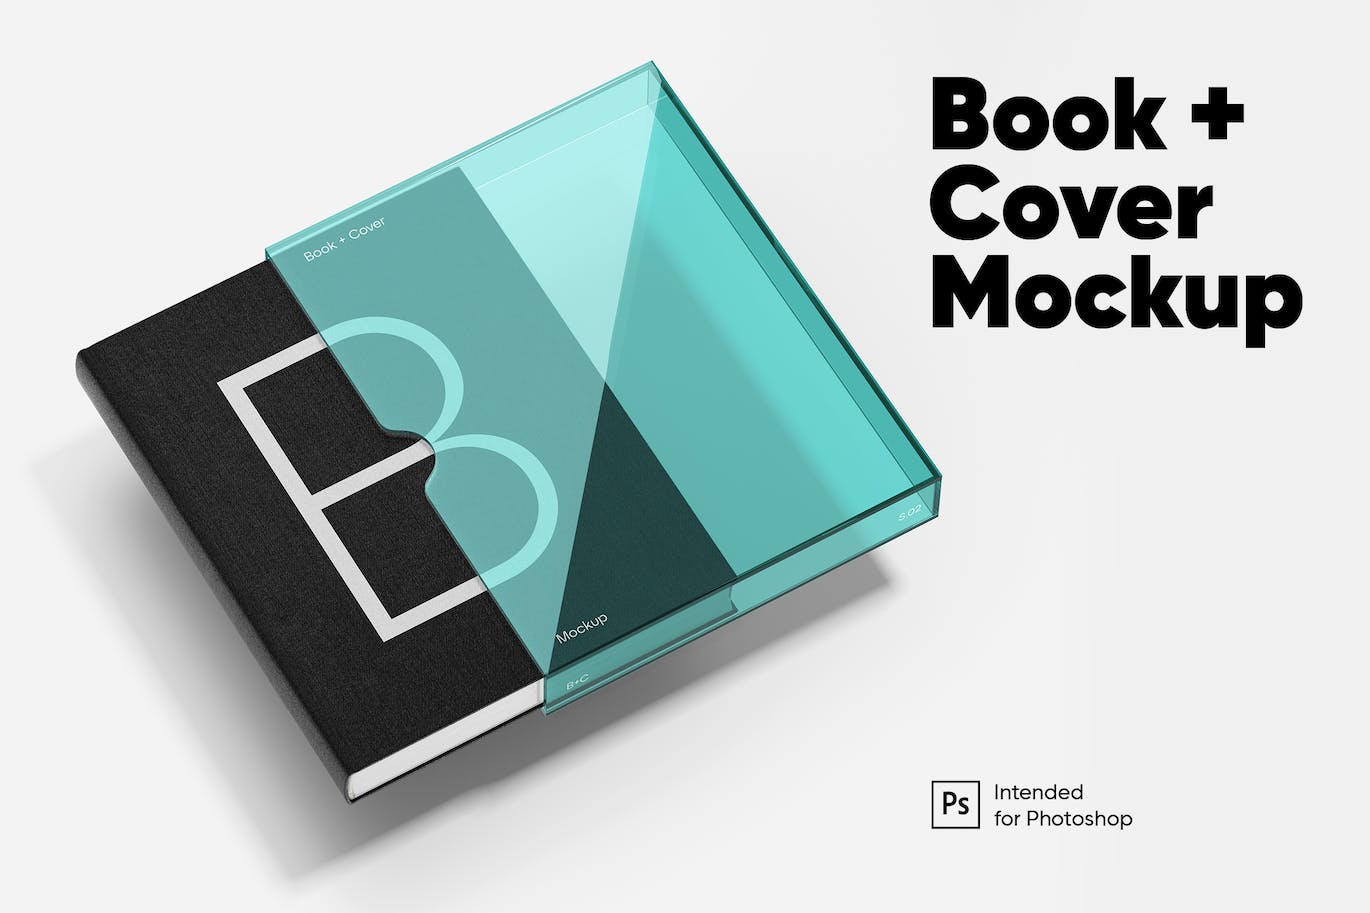 硬封书封面+玻璃书套设计样机 Book+Cover Mockup 样机素材 第1张